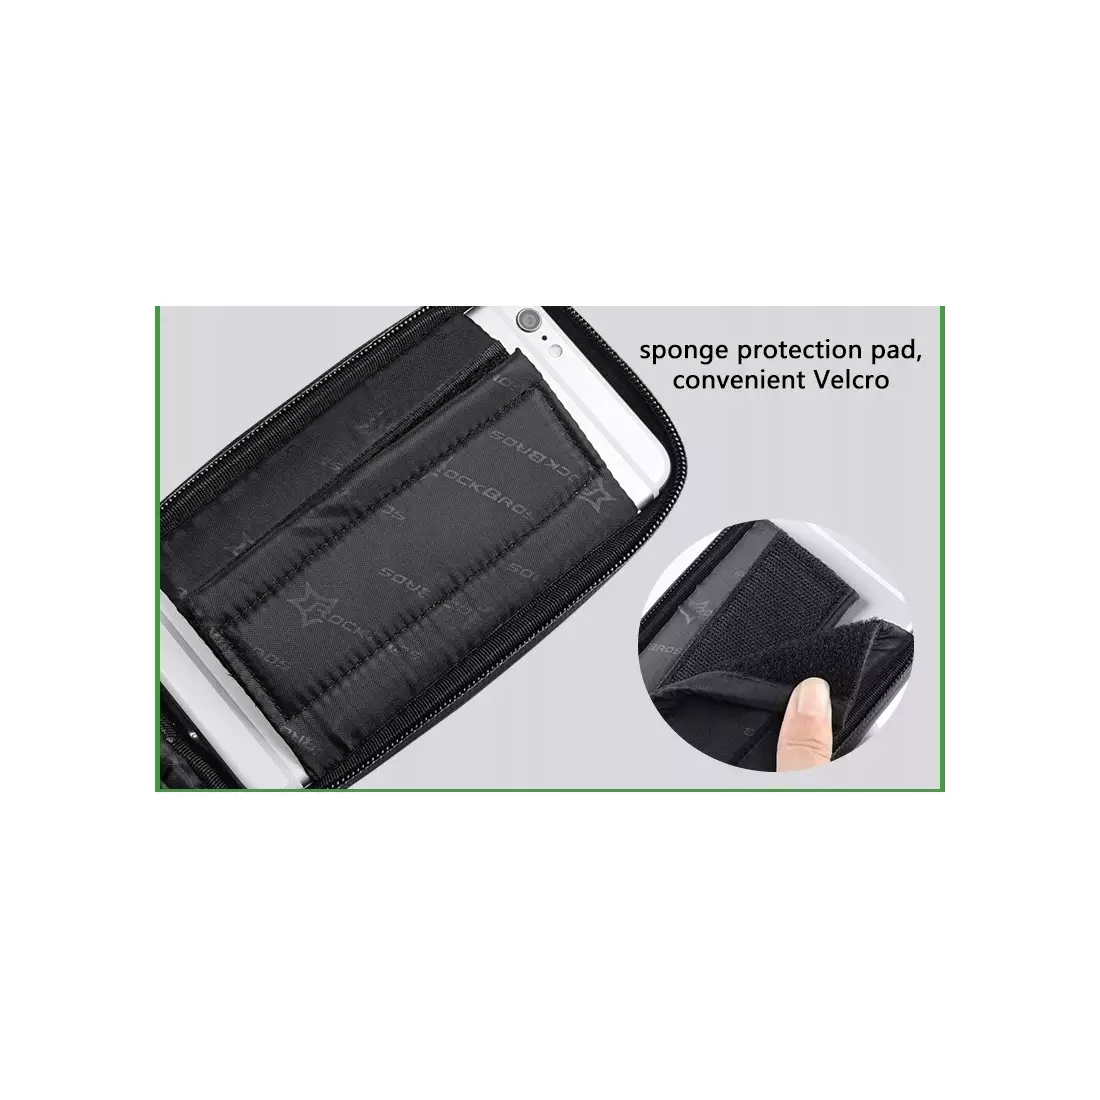 Rockbros telefonní taška na rámu v pouzdře, černá a šedá 021-1GR